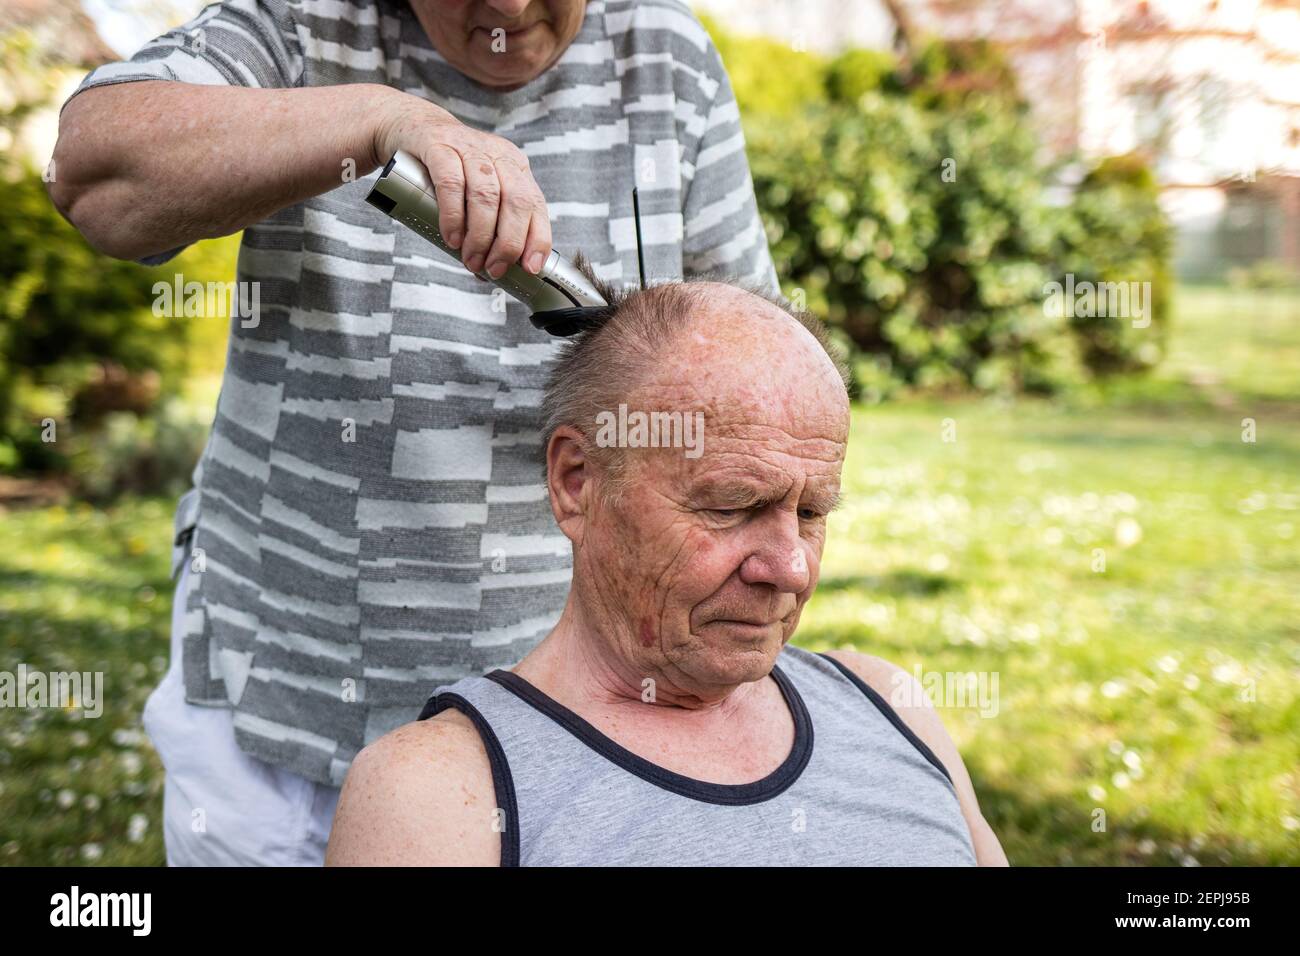 Frau macht Haarschnitt mit Haarschneider zu älteren Mann im Freien im  Garten. Ältere Menschen kümmern sich gegenseitig. Seniorenpaar  Stockfotografie - Alamy